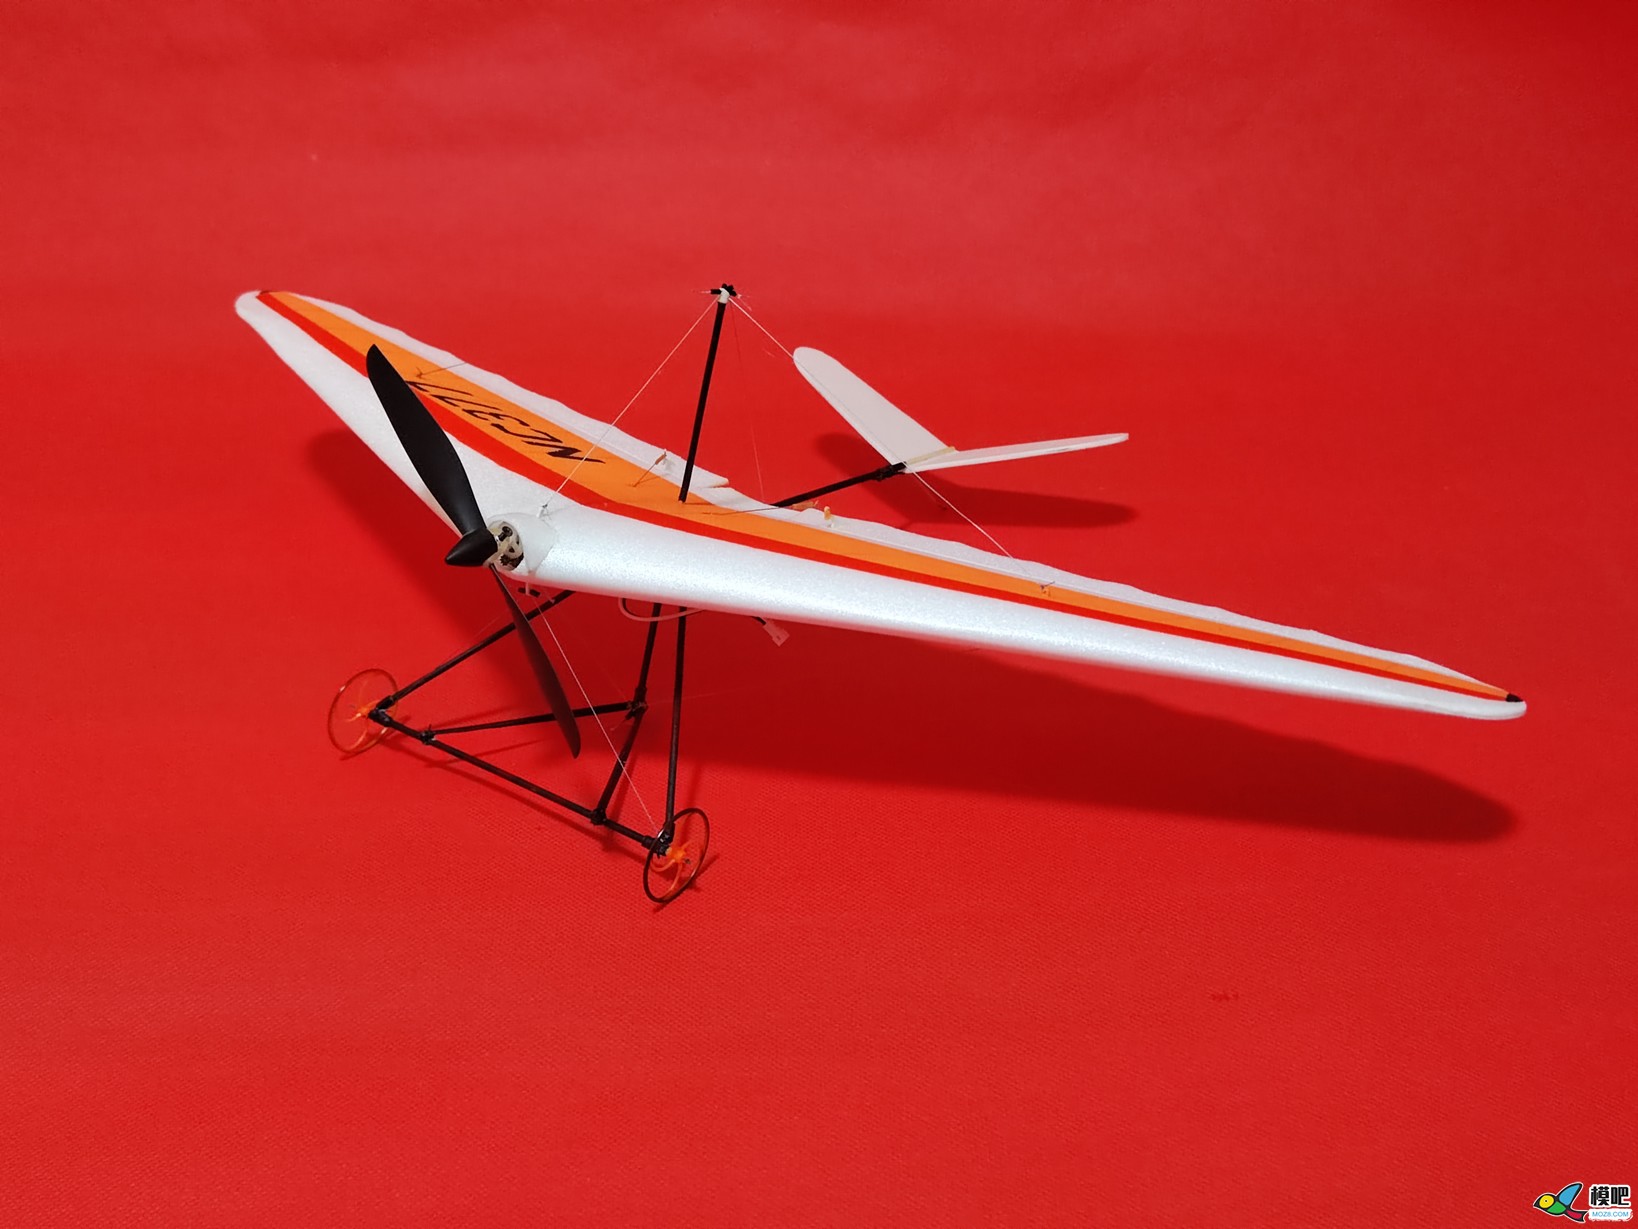 【爱因制造】自制不知名滑翔飞翼机 电池,图纸,接收机,飞翼,滑翔伞 作者:xbnlkdbxl 3601 